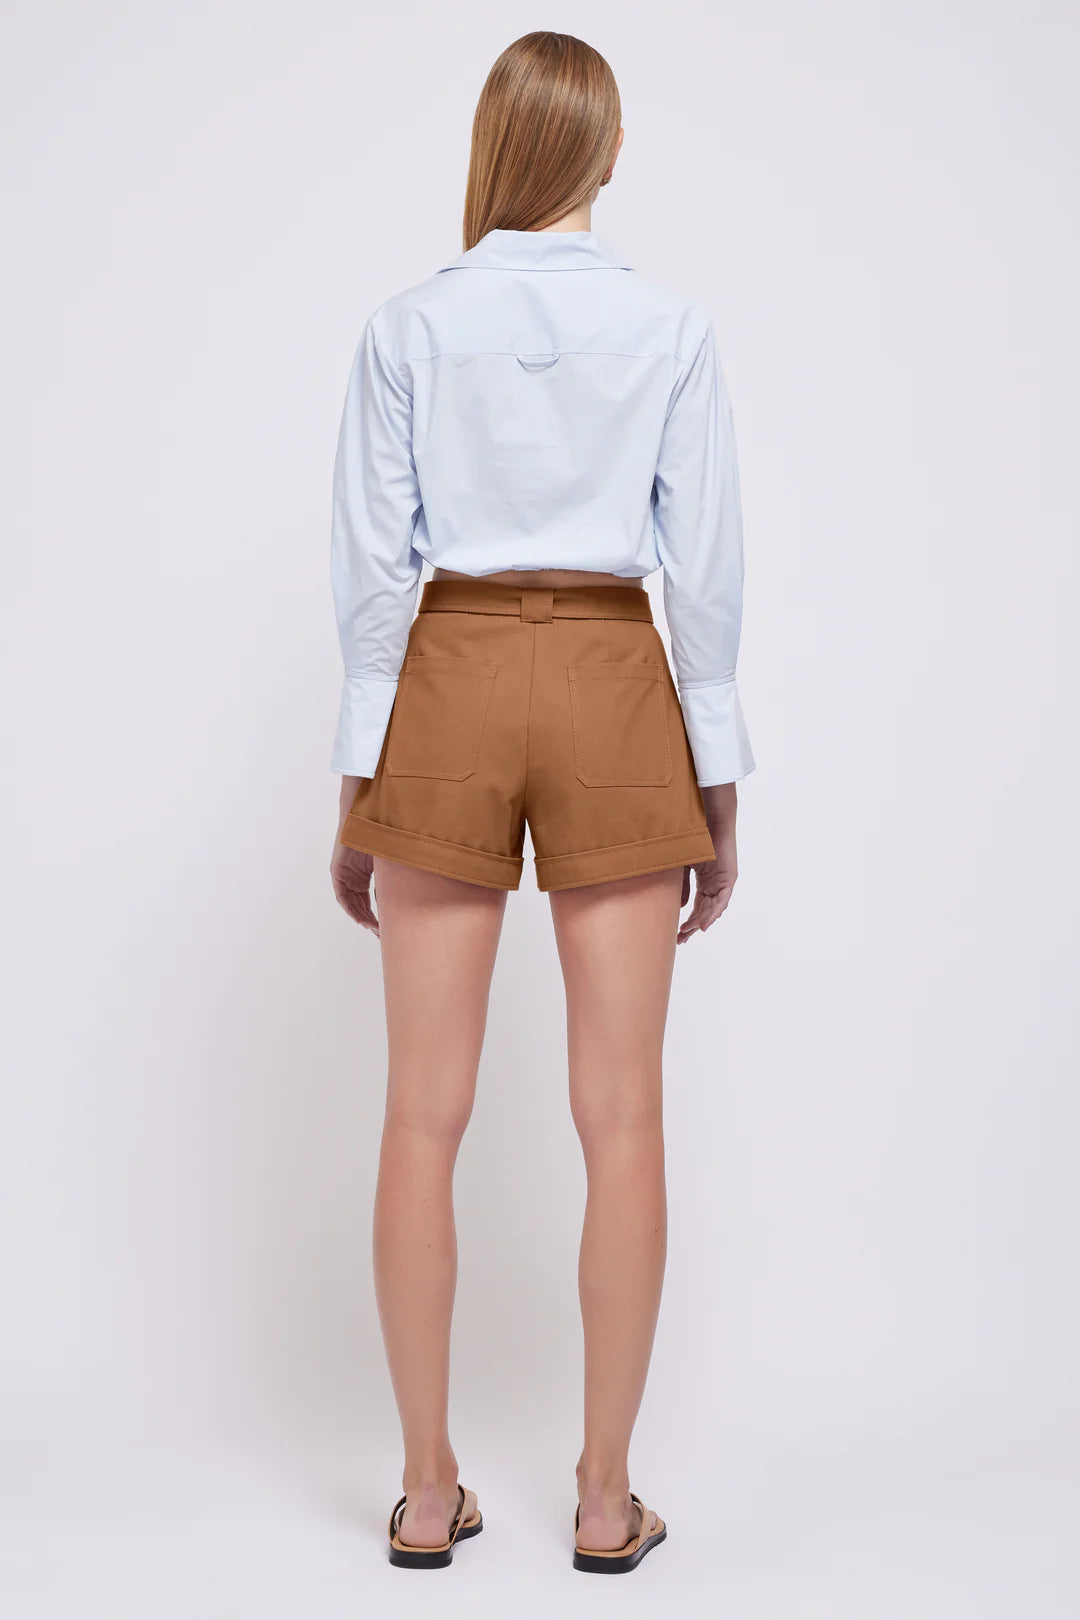 SIMKHAI Lourie Belted Shorts